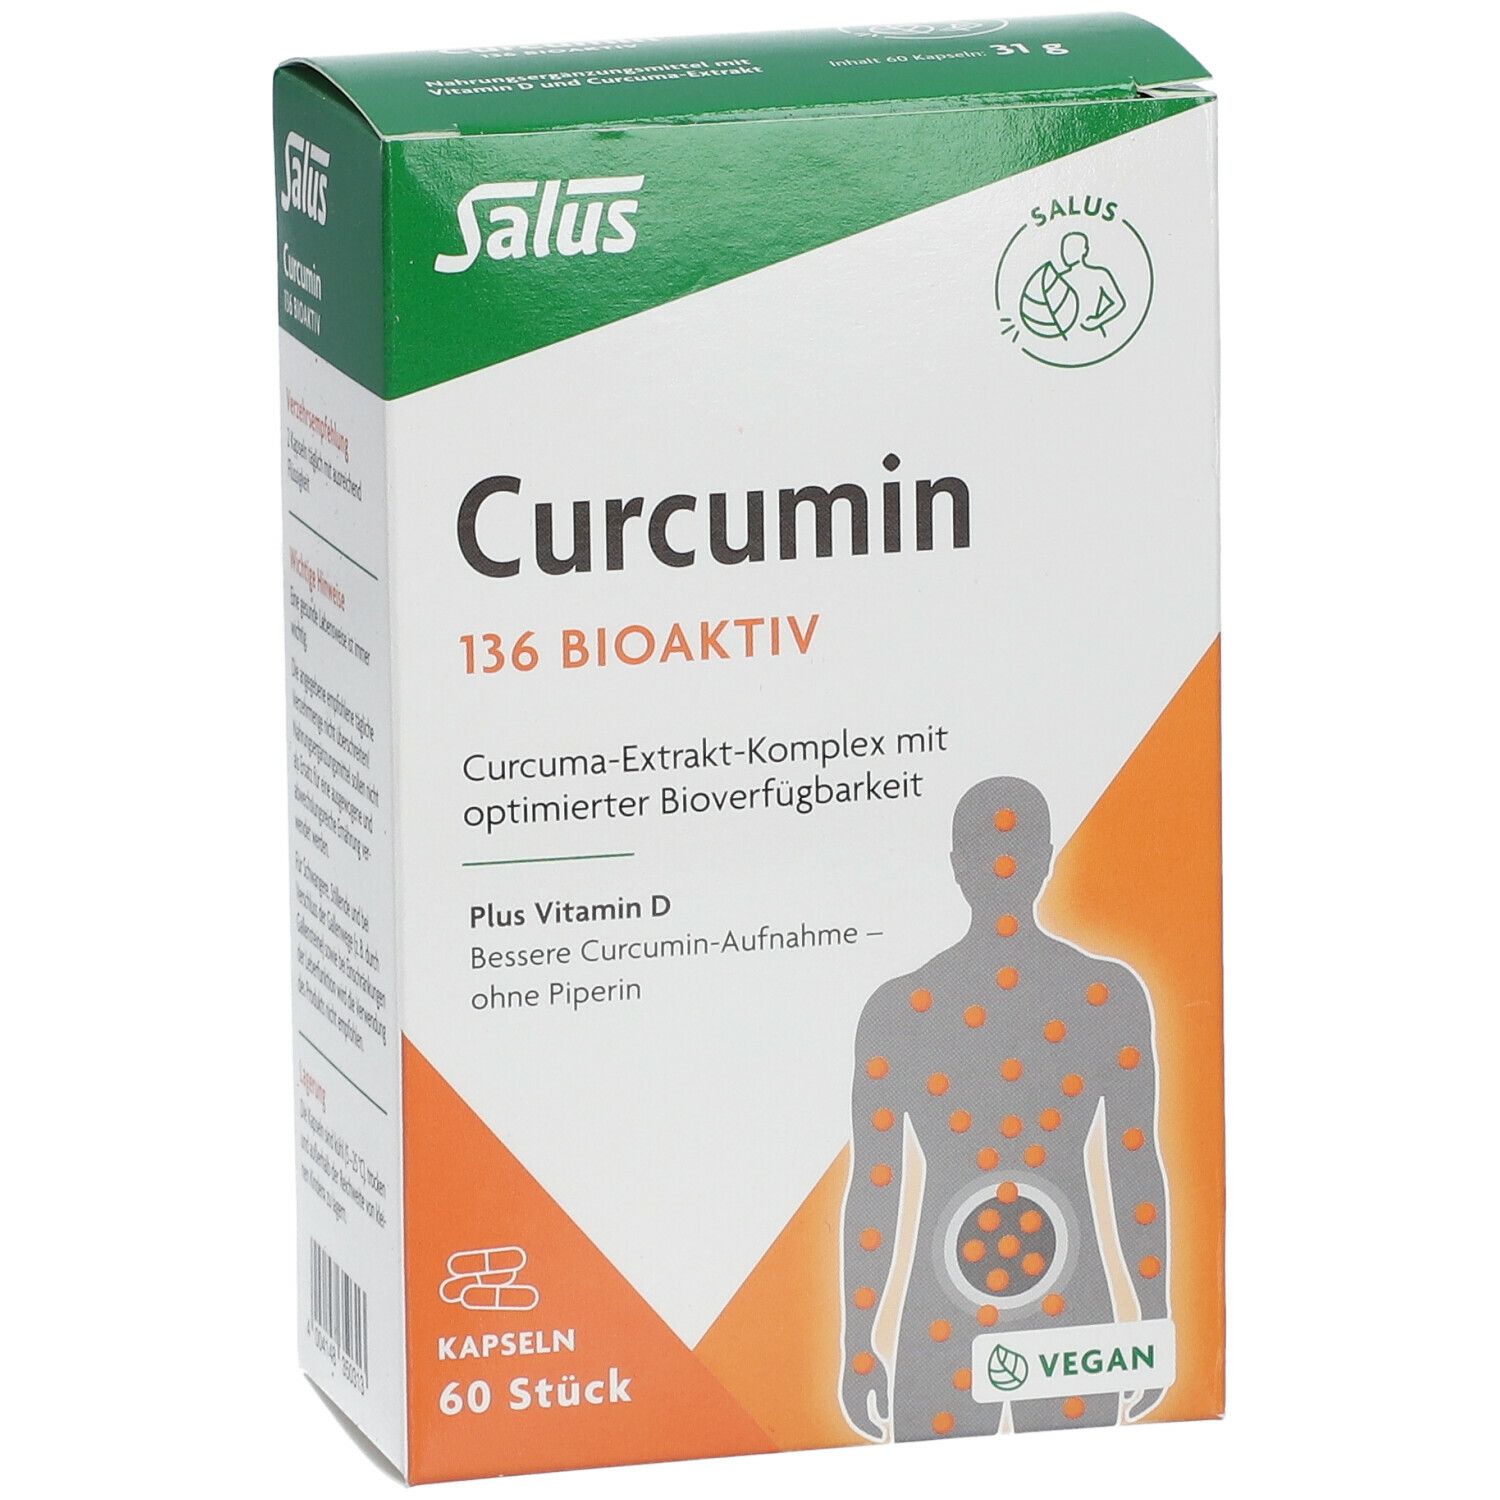 Salus® Curcumin 136 Bioaktiv